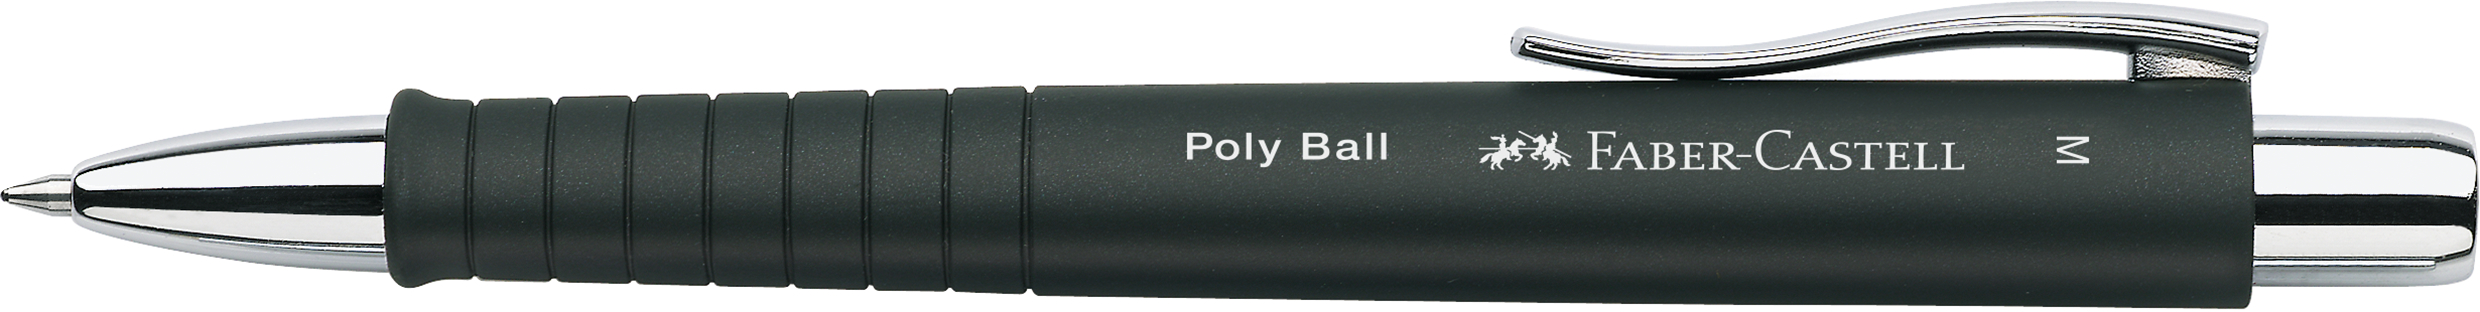 FABER-CASTELL Stylo bille POLY BALL 0.5mm 241199 noir noir